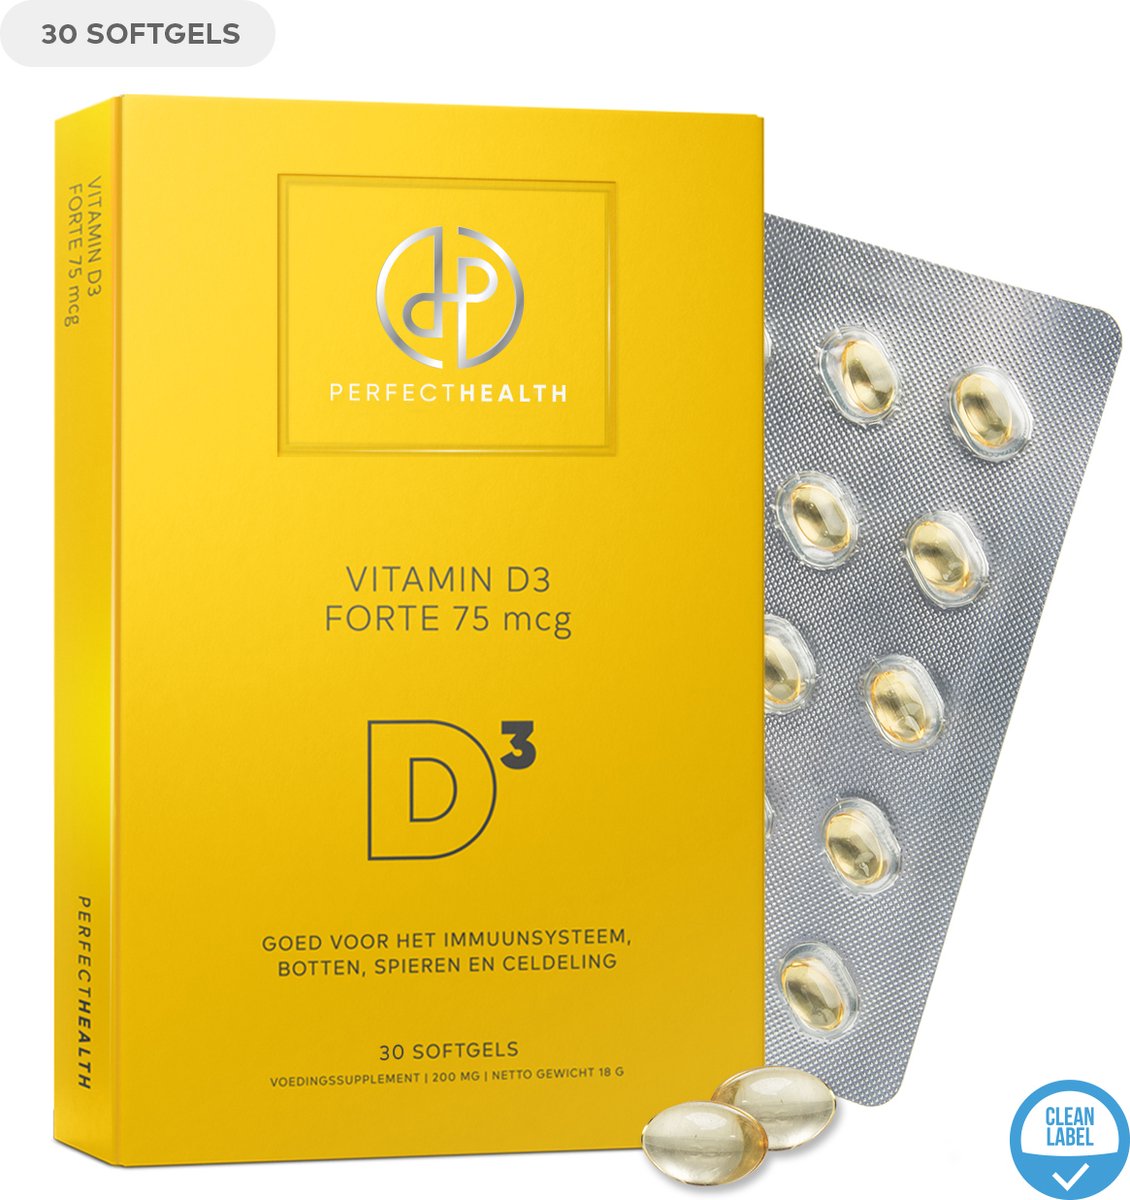 Perfect Health - Vitamine D3 Forte 75 mcg - Immuunsysteem, botten, tanden, spieren en celdeling - Vitamine d voor volwassenen - 30 softgels - Hoog gedoseerd